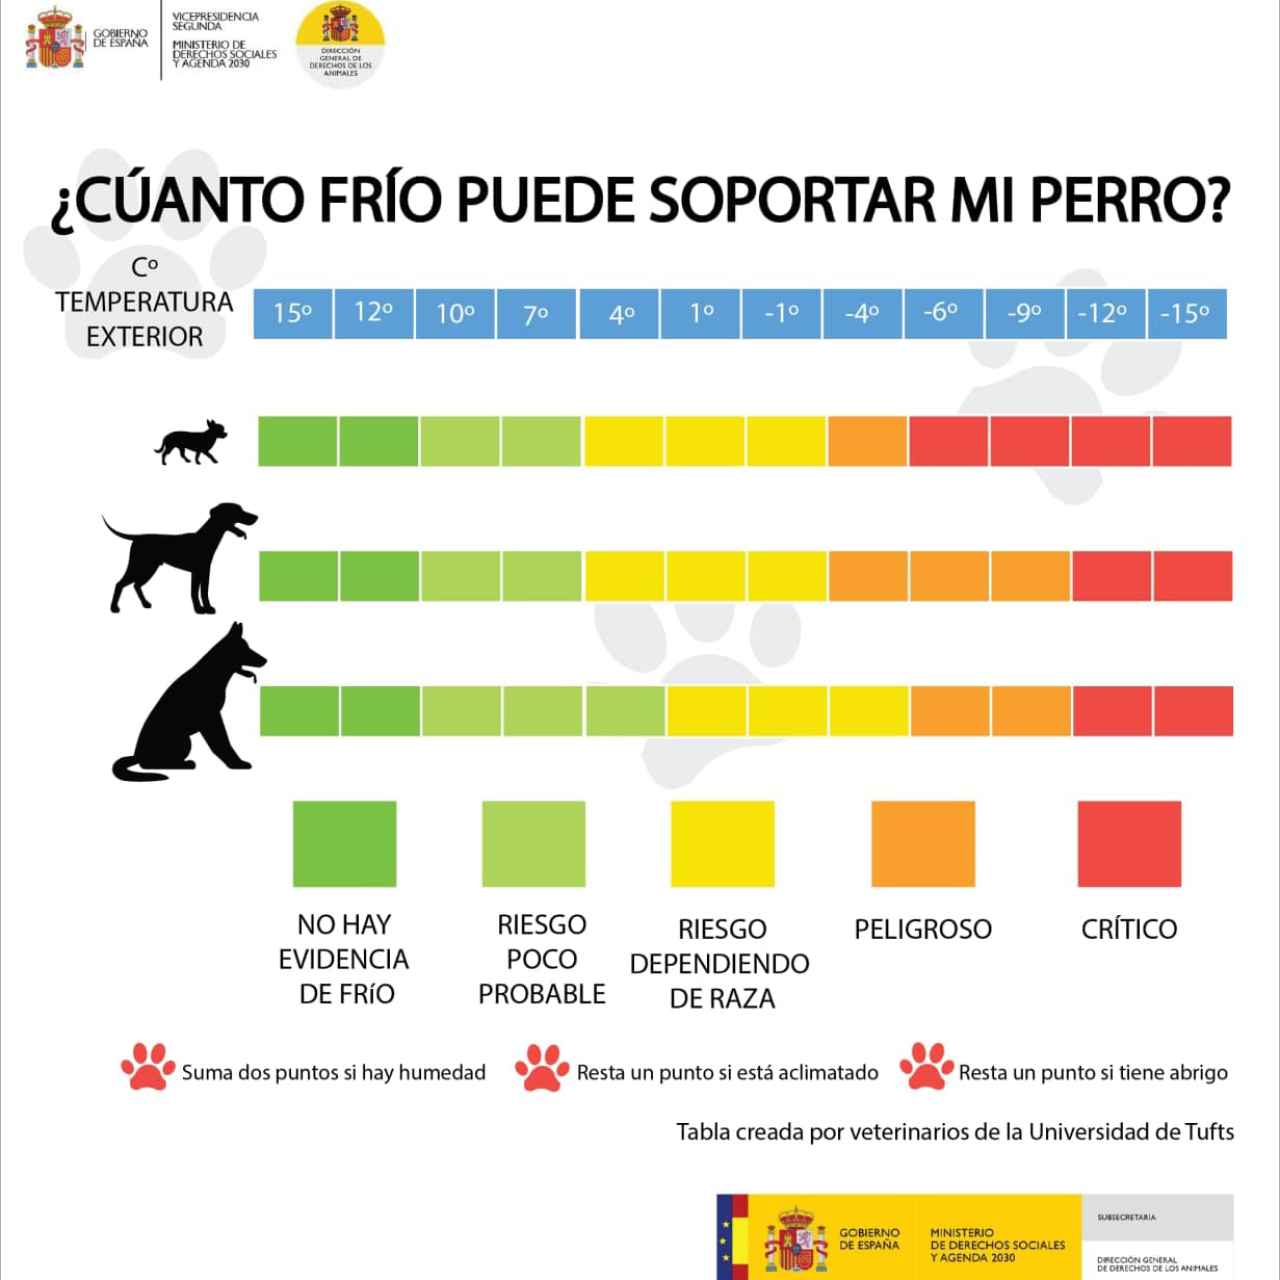 Fuente: Dirección General de Derechos de los Animales del Gobierno de España  en colaboración con la Universidad de Tufts